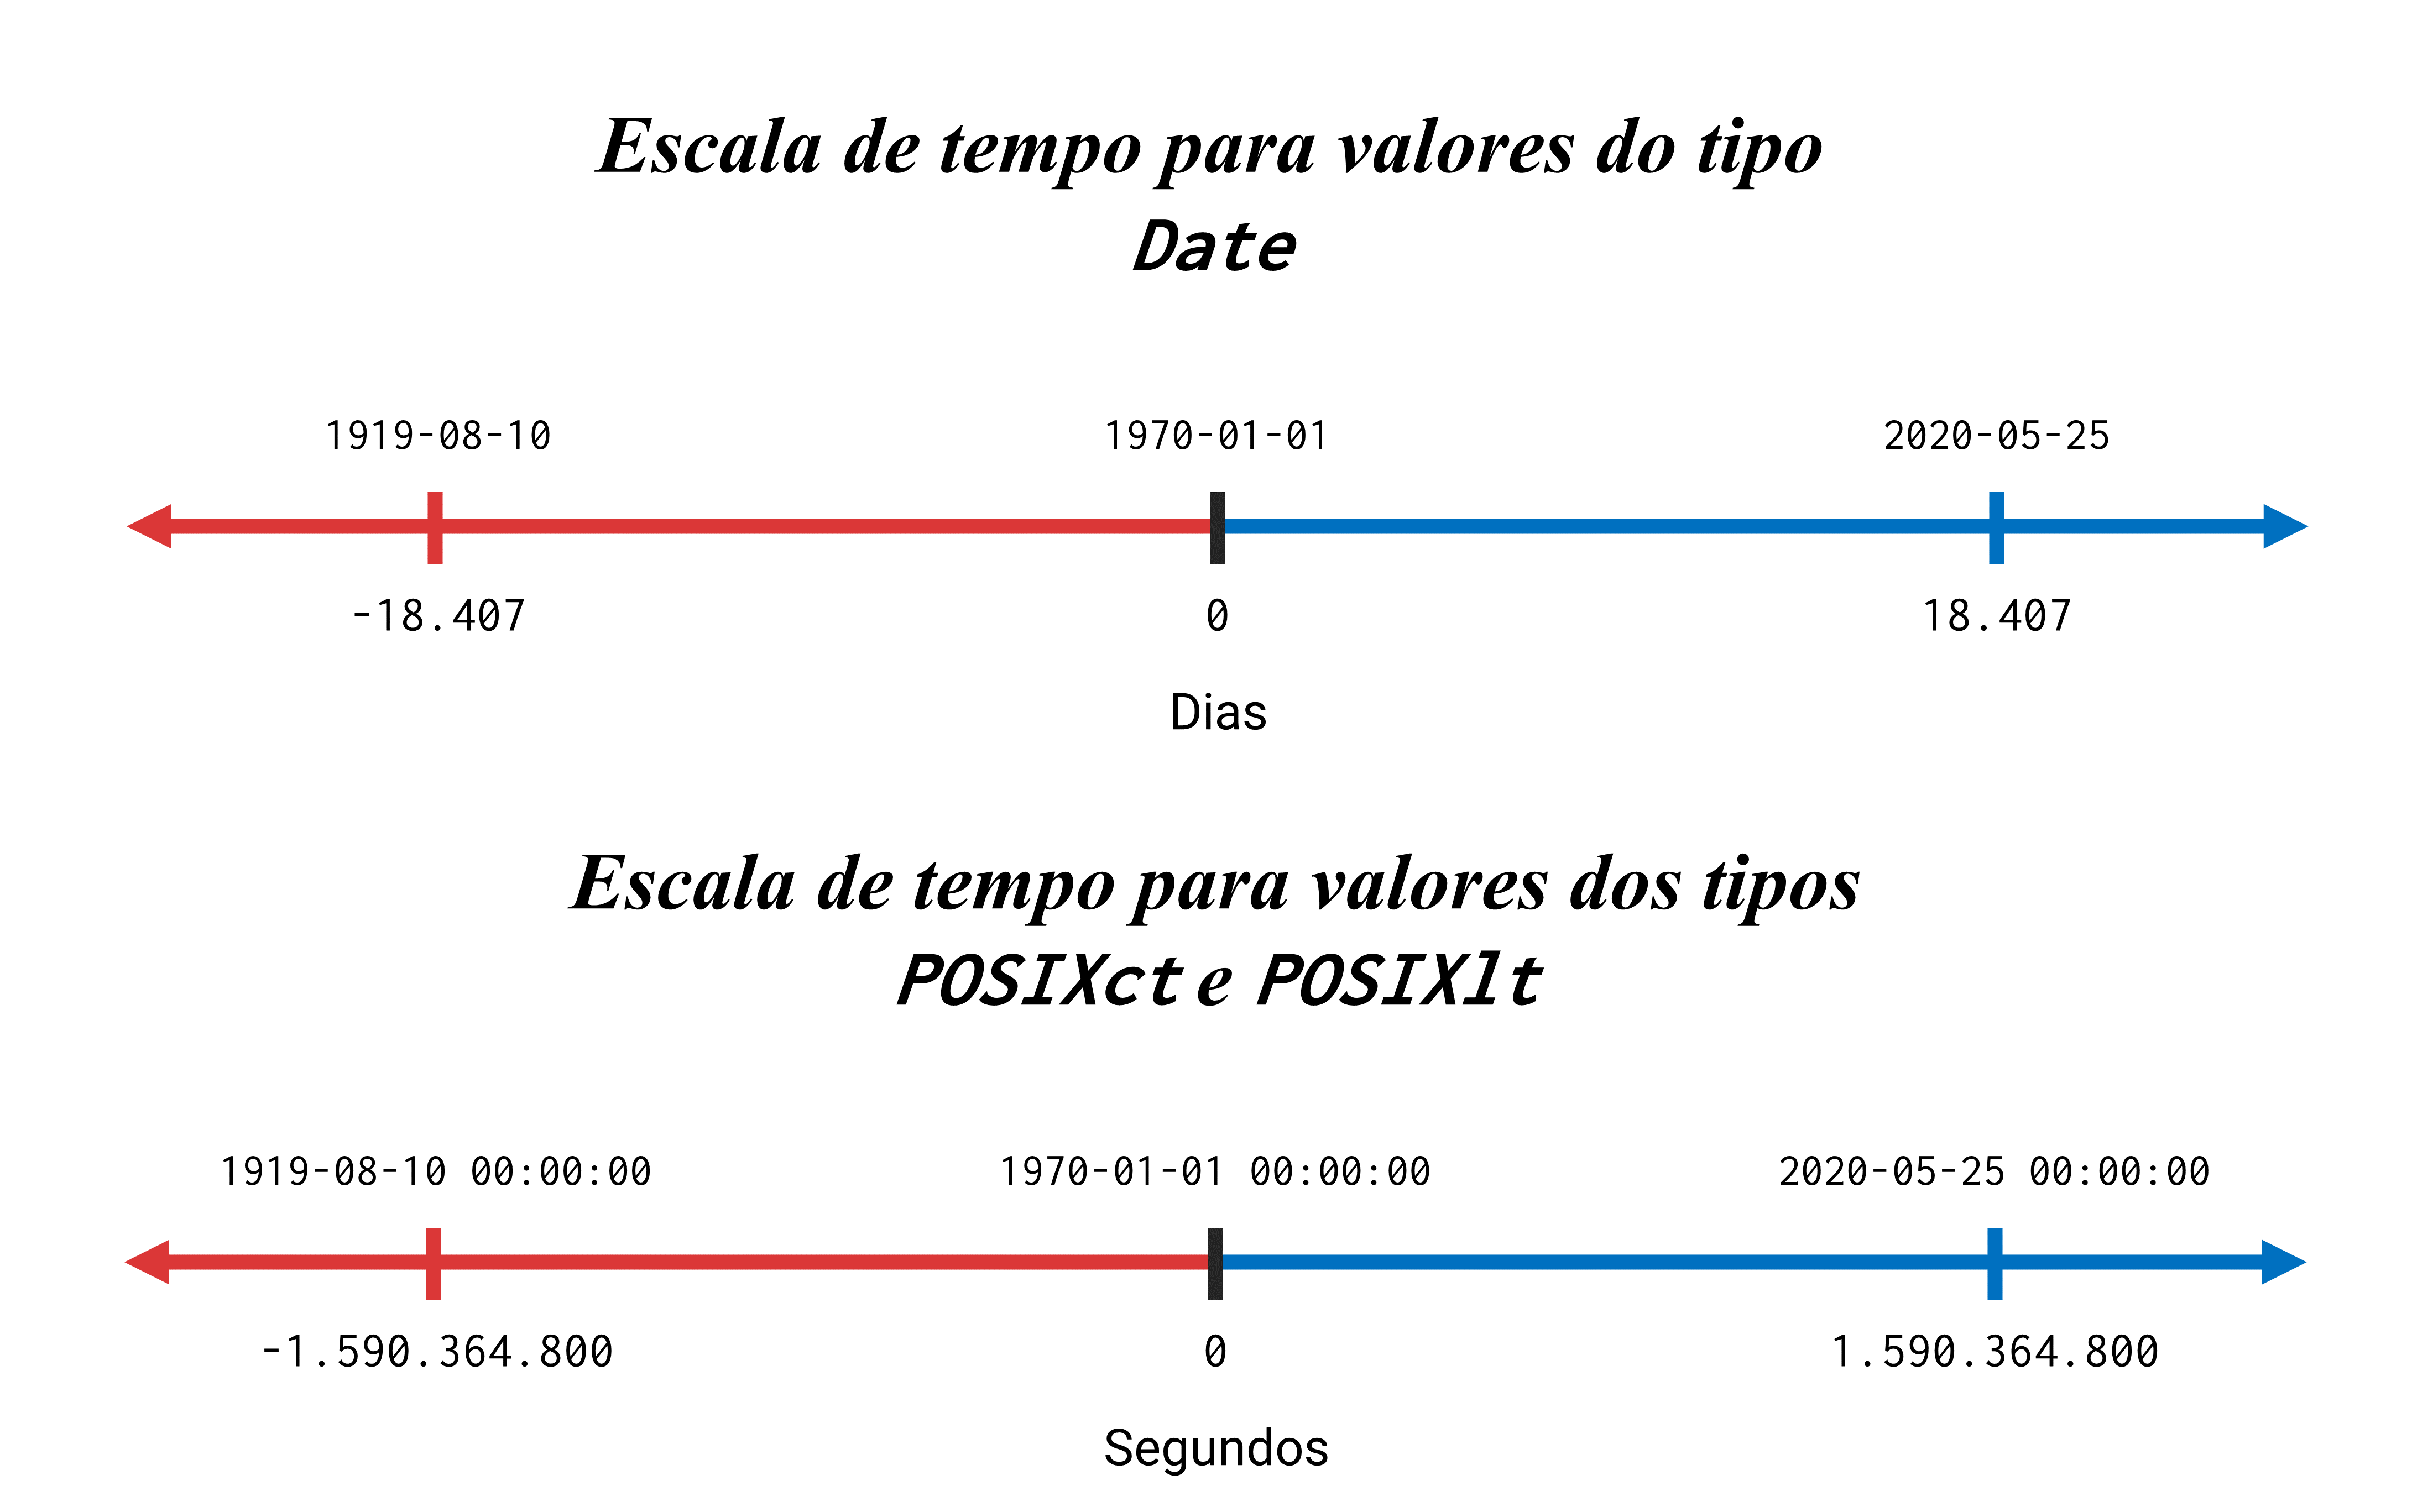 Representação visual da escala de tempo utilizada por cada tipo de dado